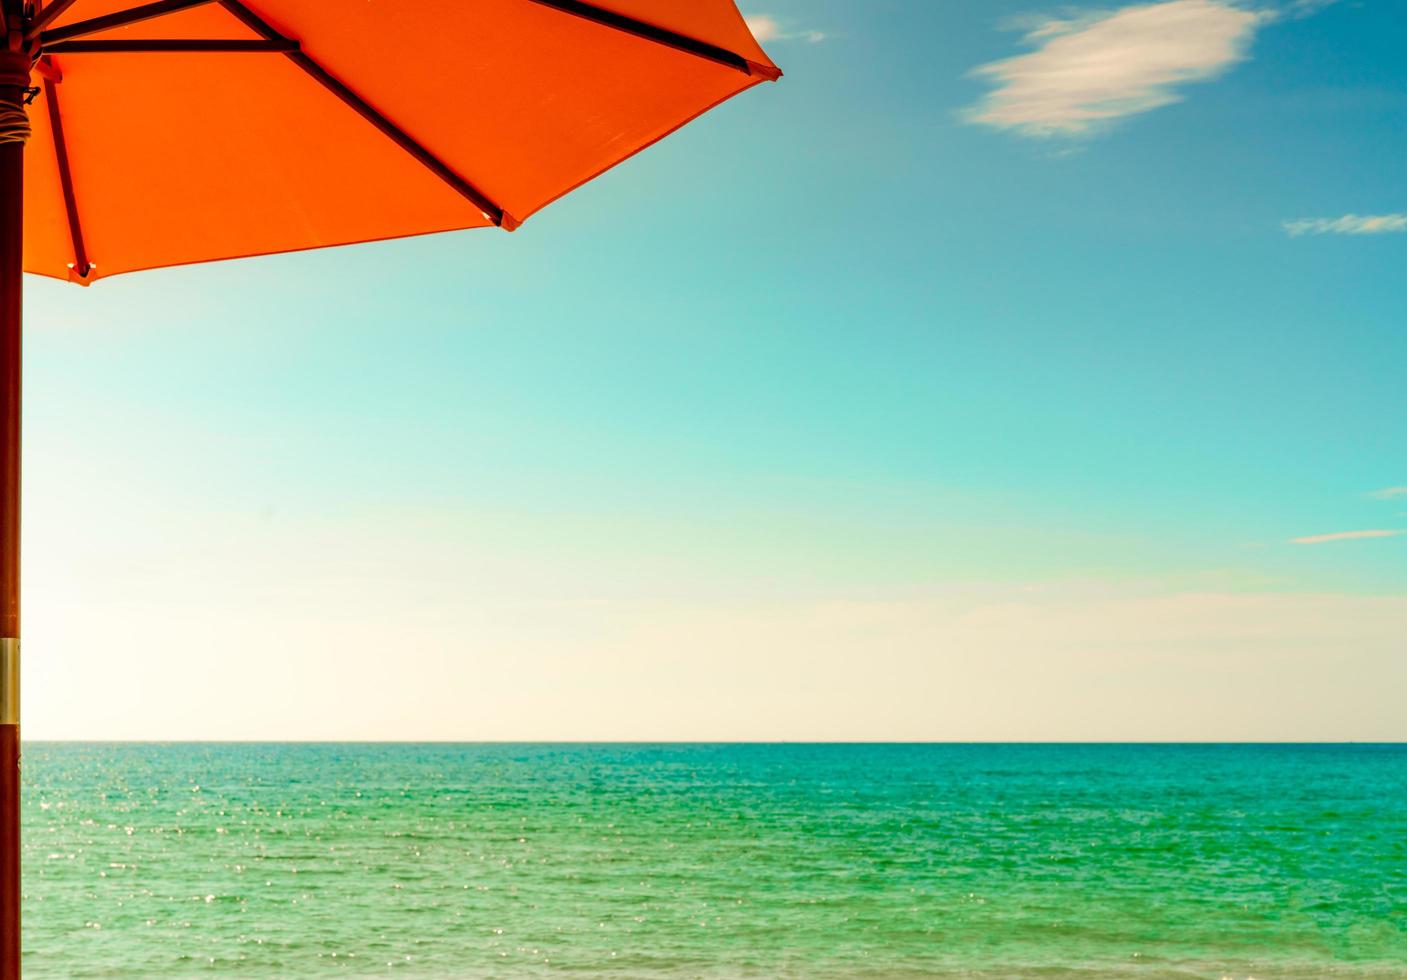 sombrilla de playa naranja en la playa de arena dorada junto al mar con agua de mar verde esmeralda y cielo azul y nubes blancas. vacaciones de verano en el concepto de playa paraíso tropical. horizonte entre el mar y el cielo. foto